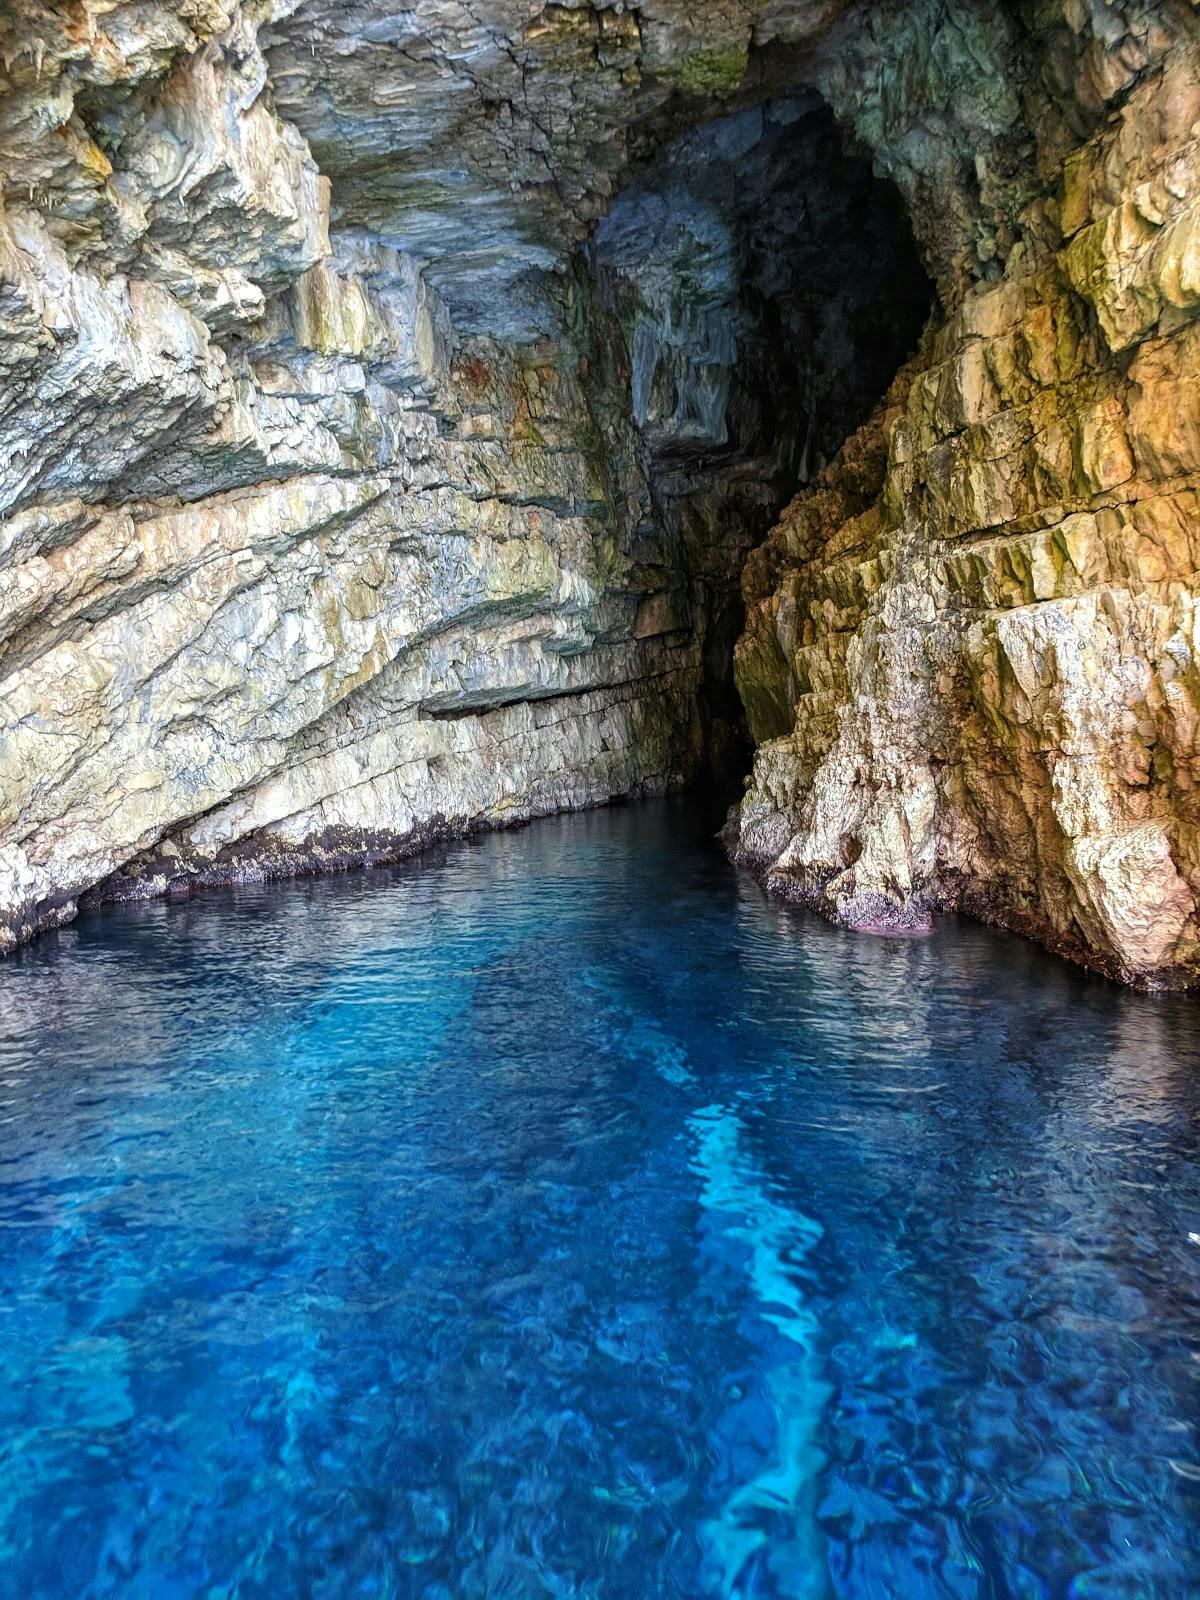 Image - Blaue Grotte